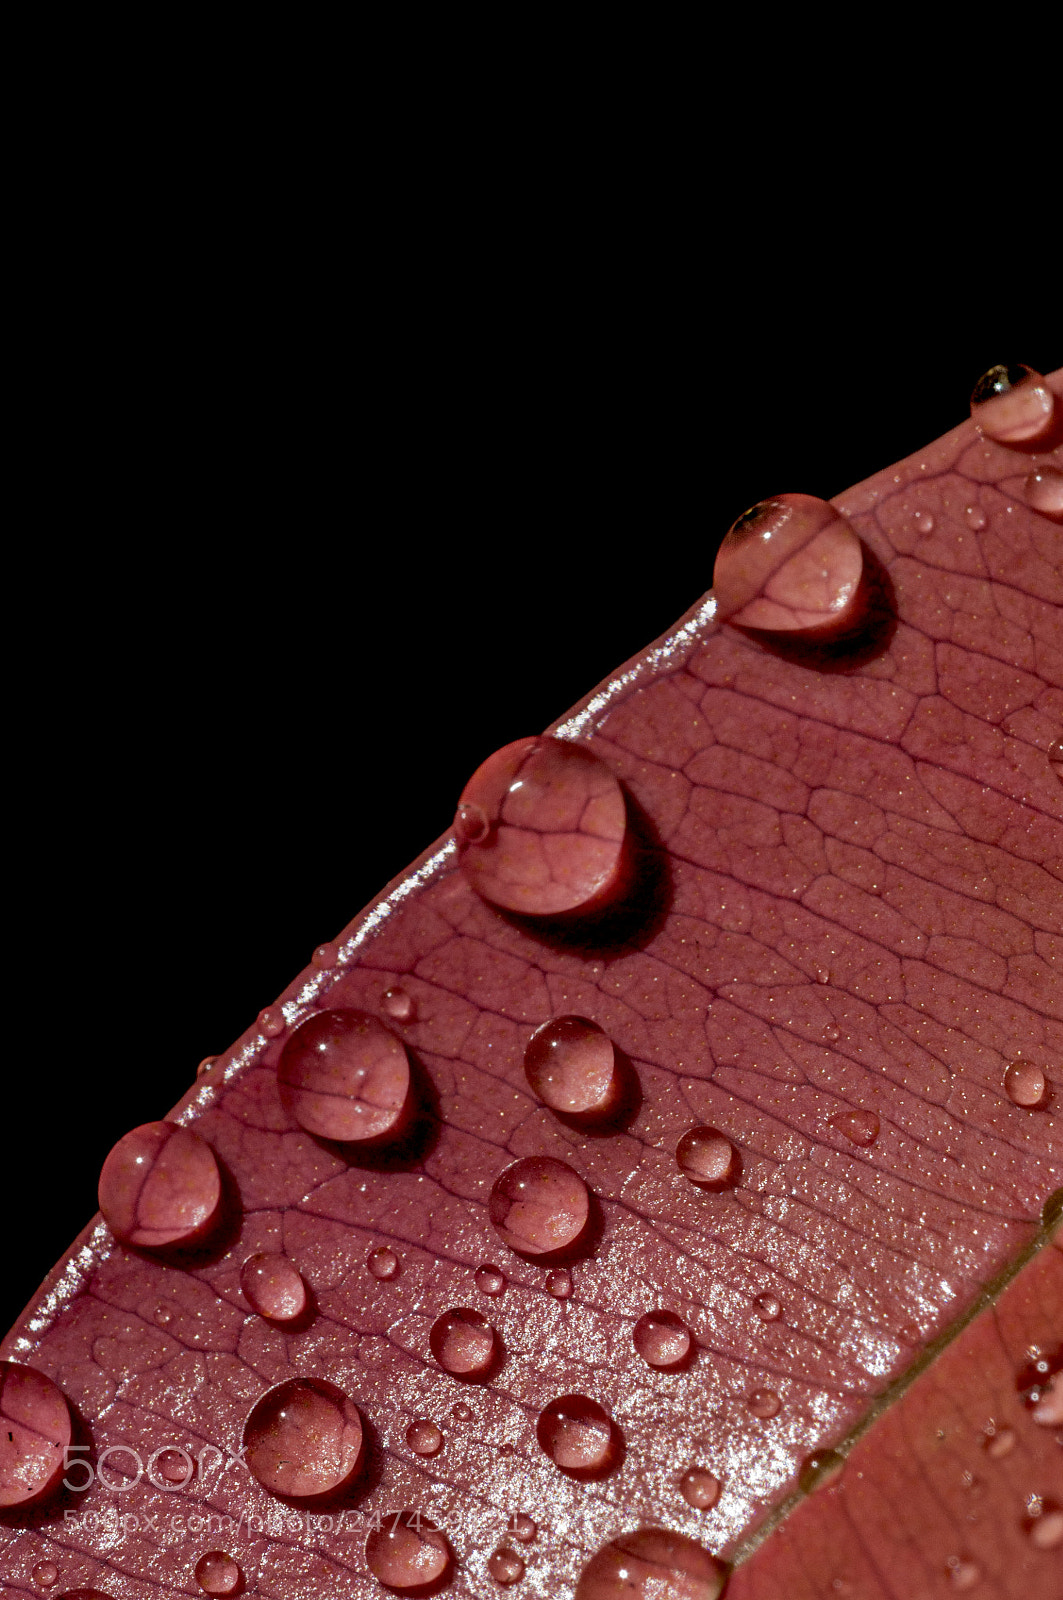 Nikon D90 sample photo. After rain photography